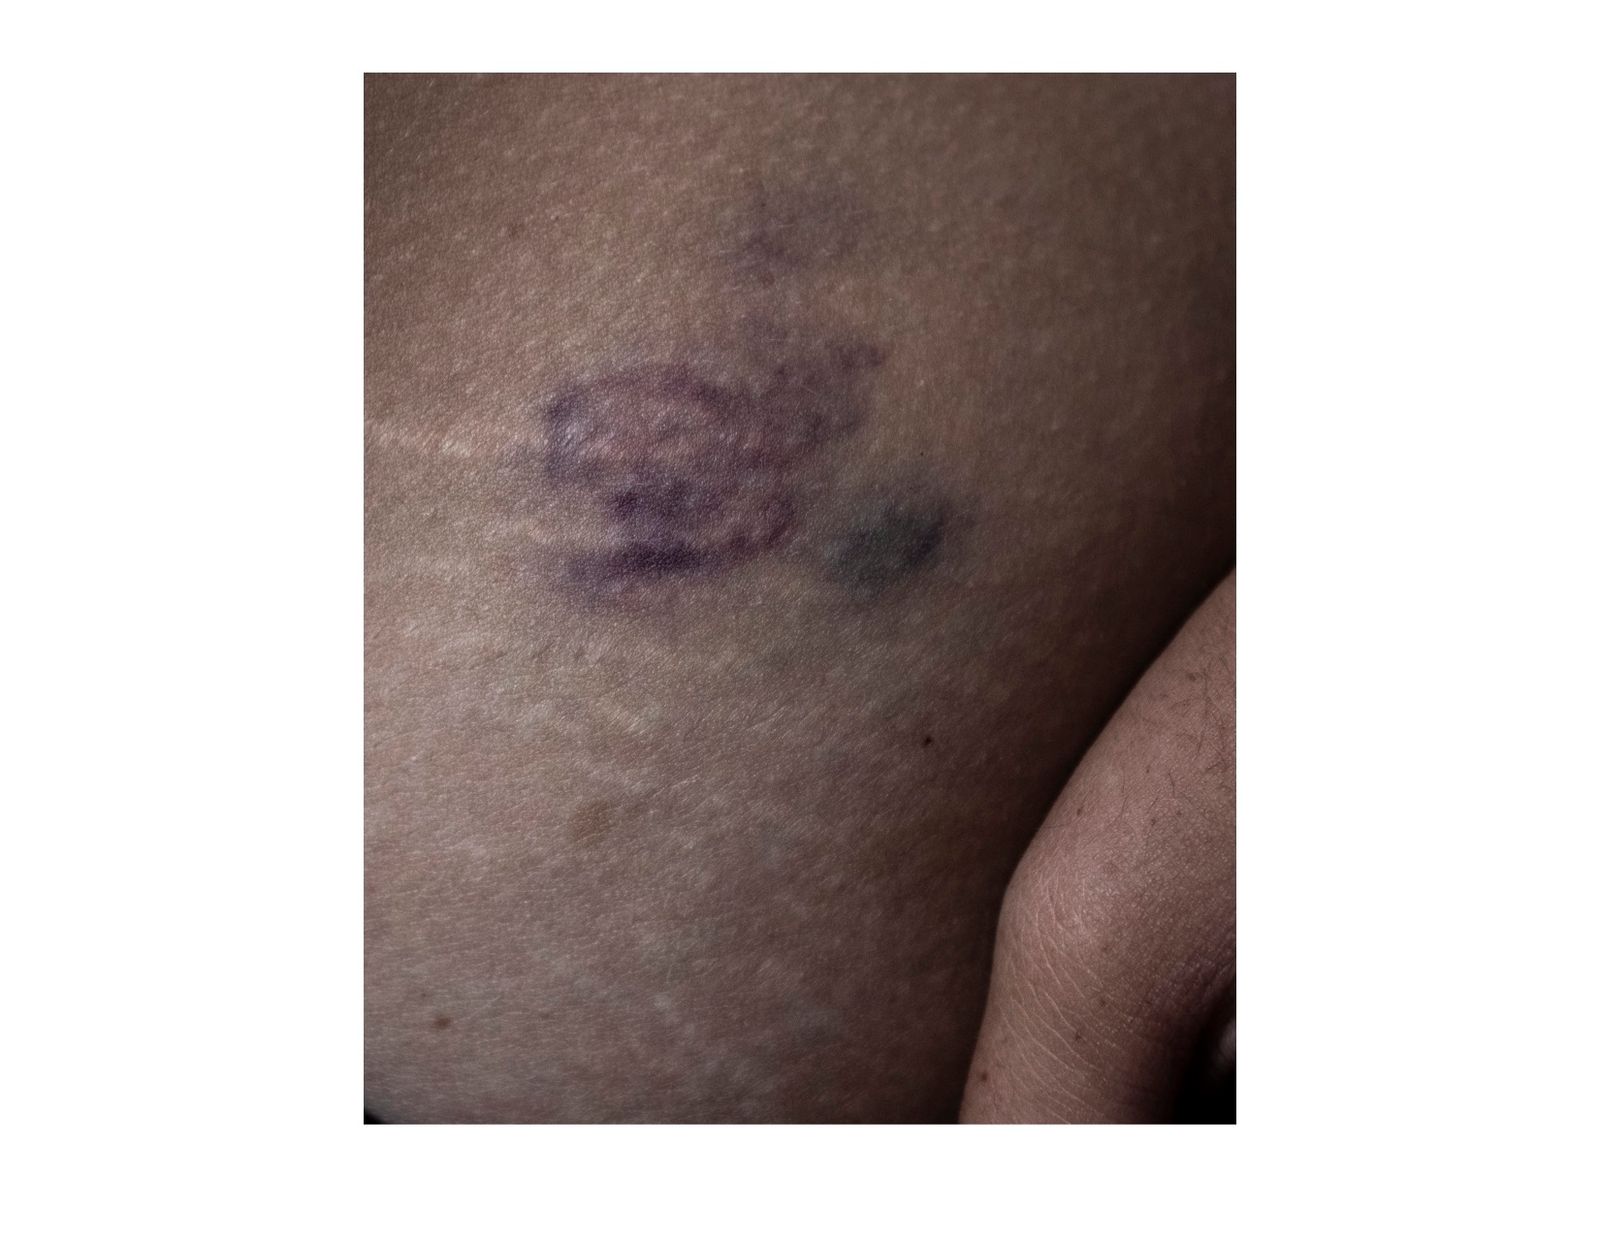 © Andrea Hernández Briceño - A bruise on Andrea Monsalve's belly in Caracas, Venezuela, on August 24, 2018